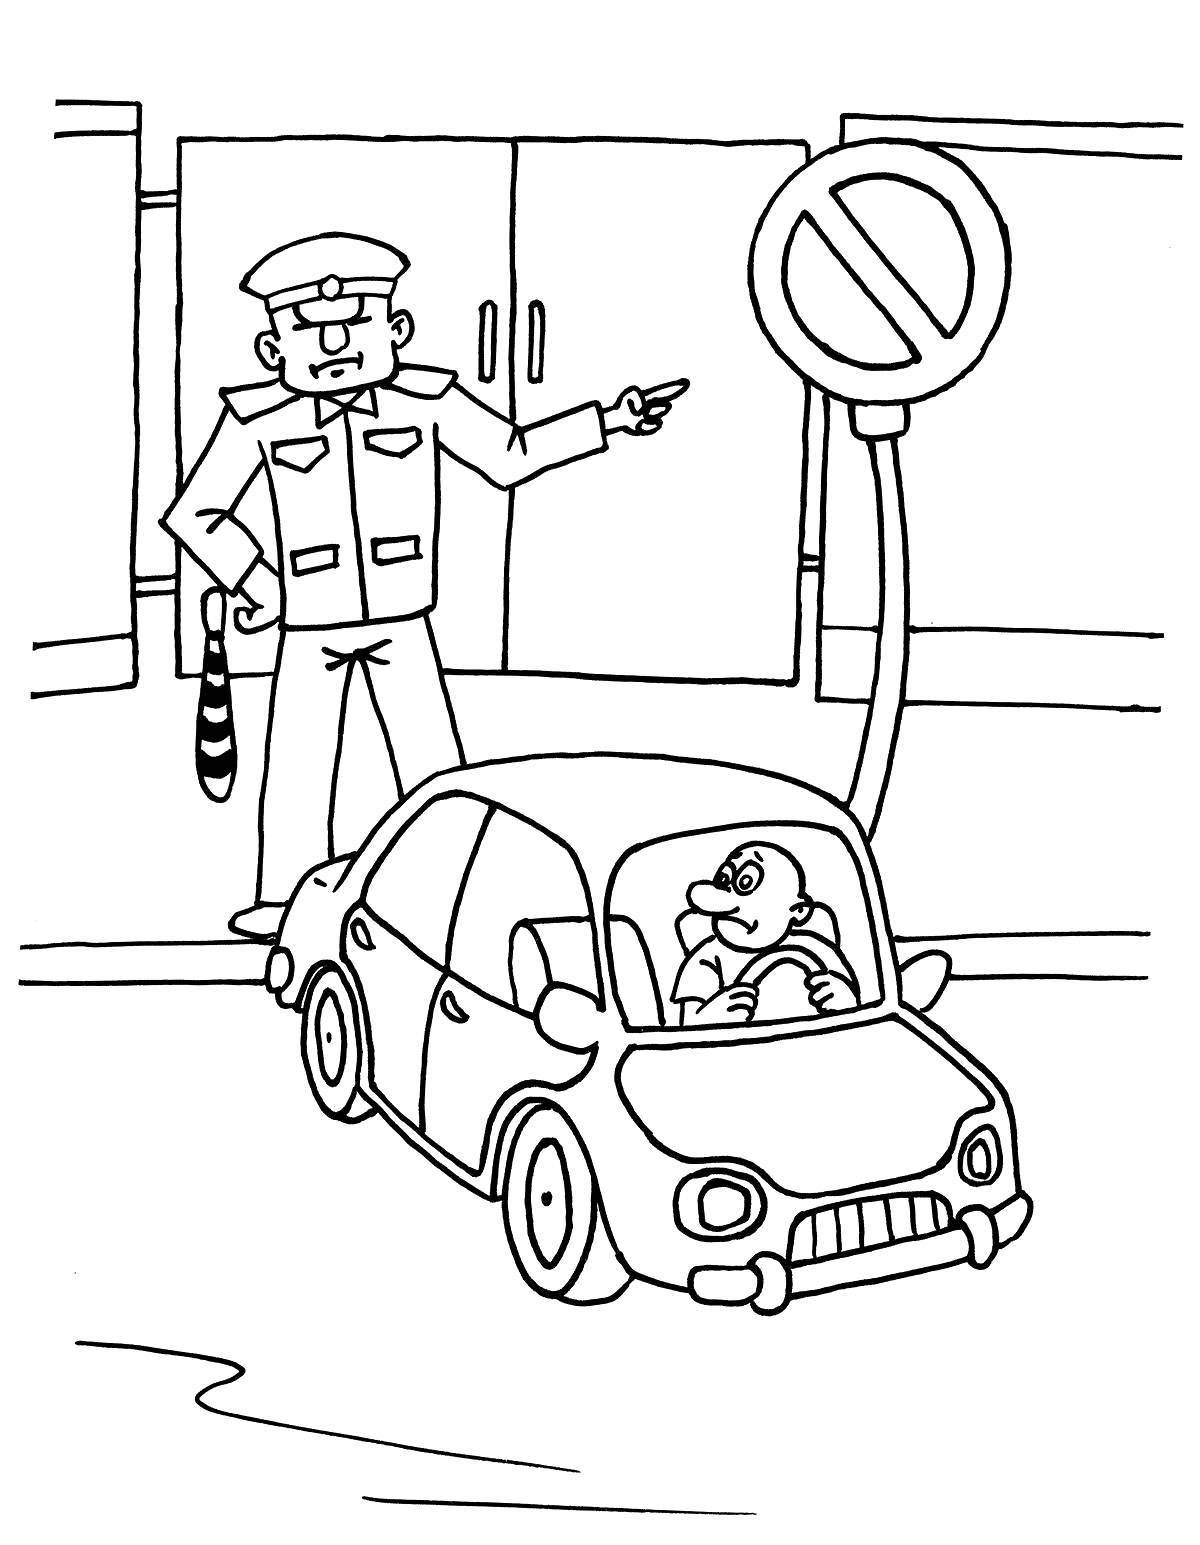 Fun coloring book for pedestrians